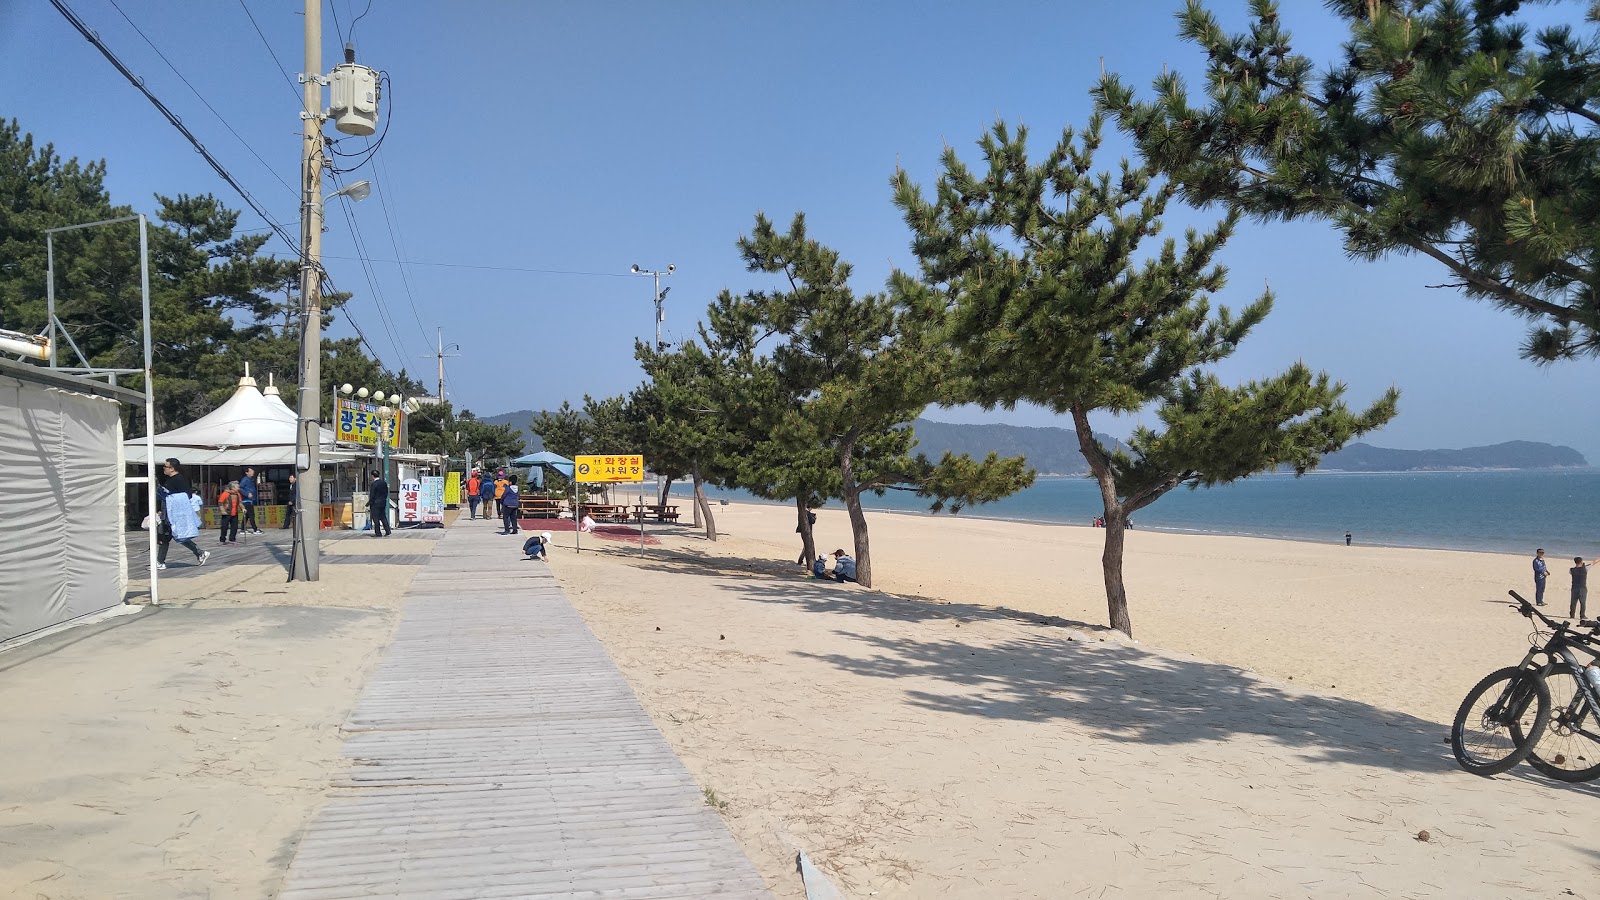 Fotografie cu Myeongsasimni Beach - locul popular printre cunoscătorii de relaxare